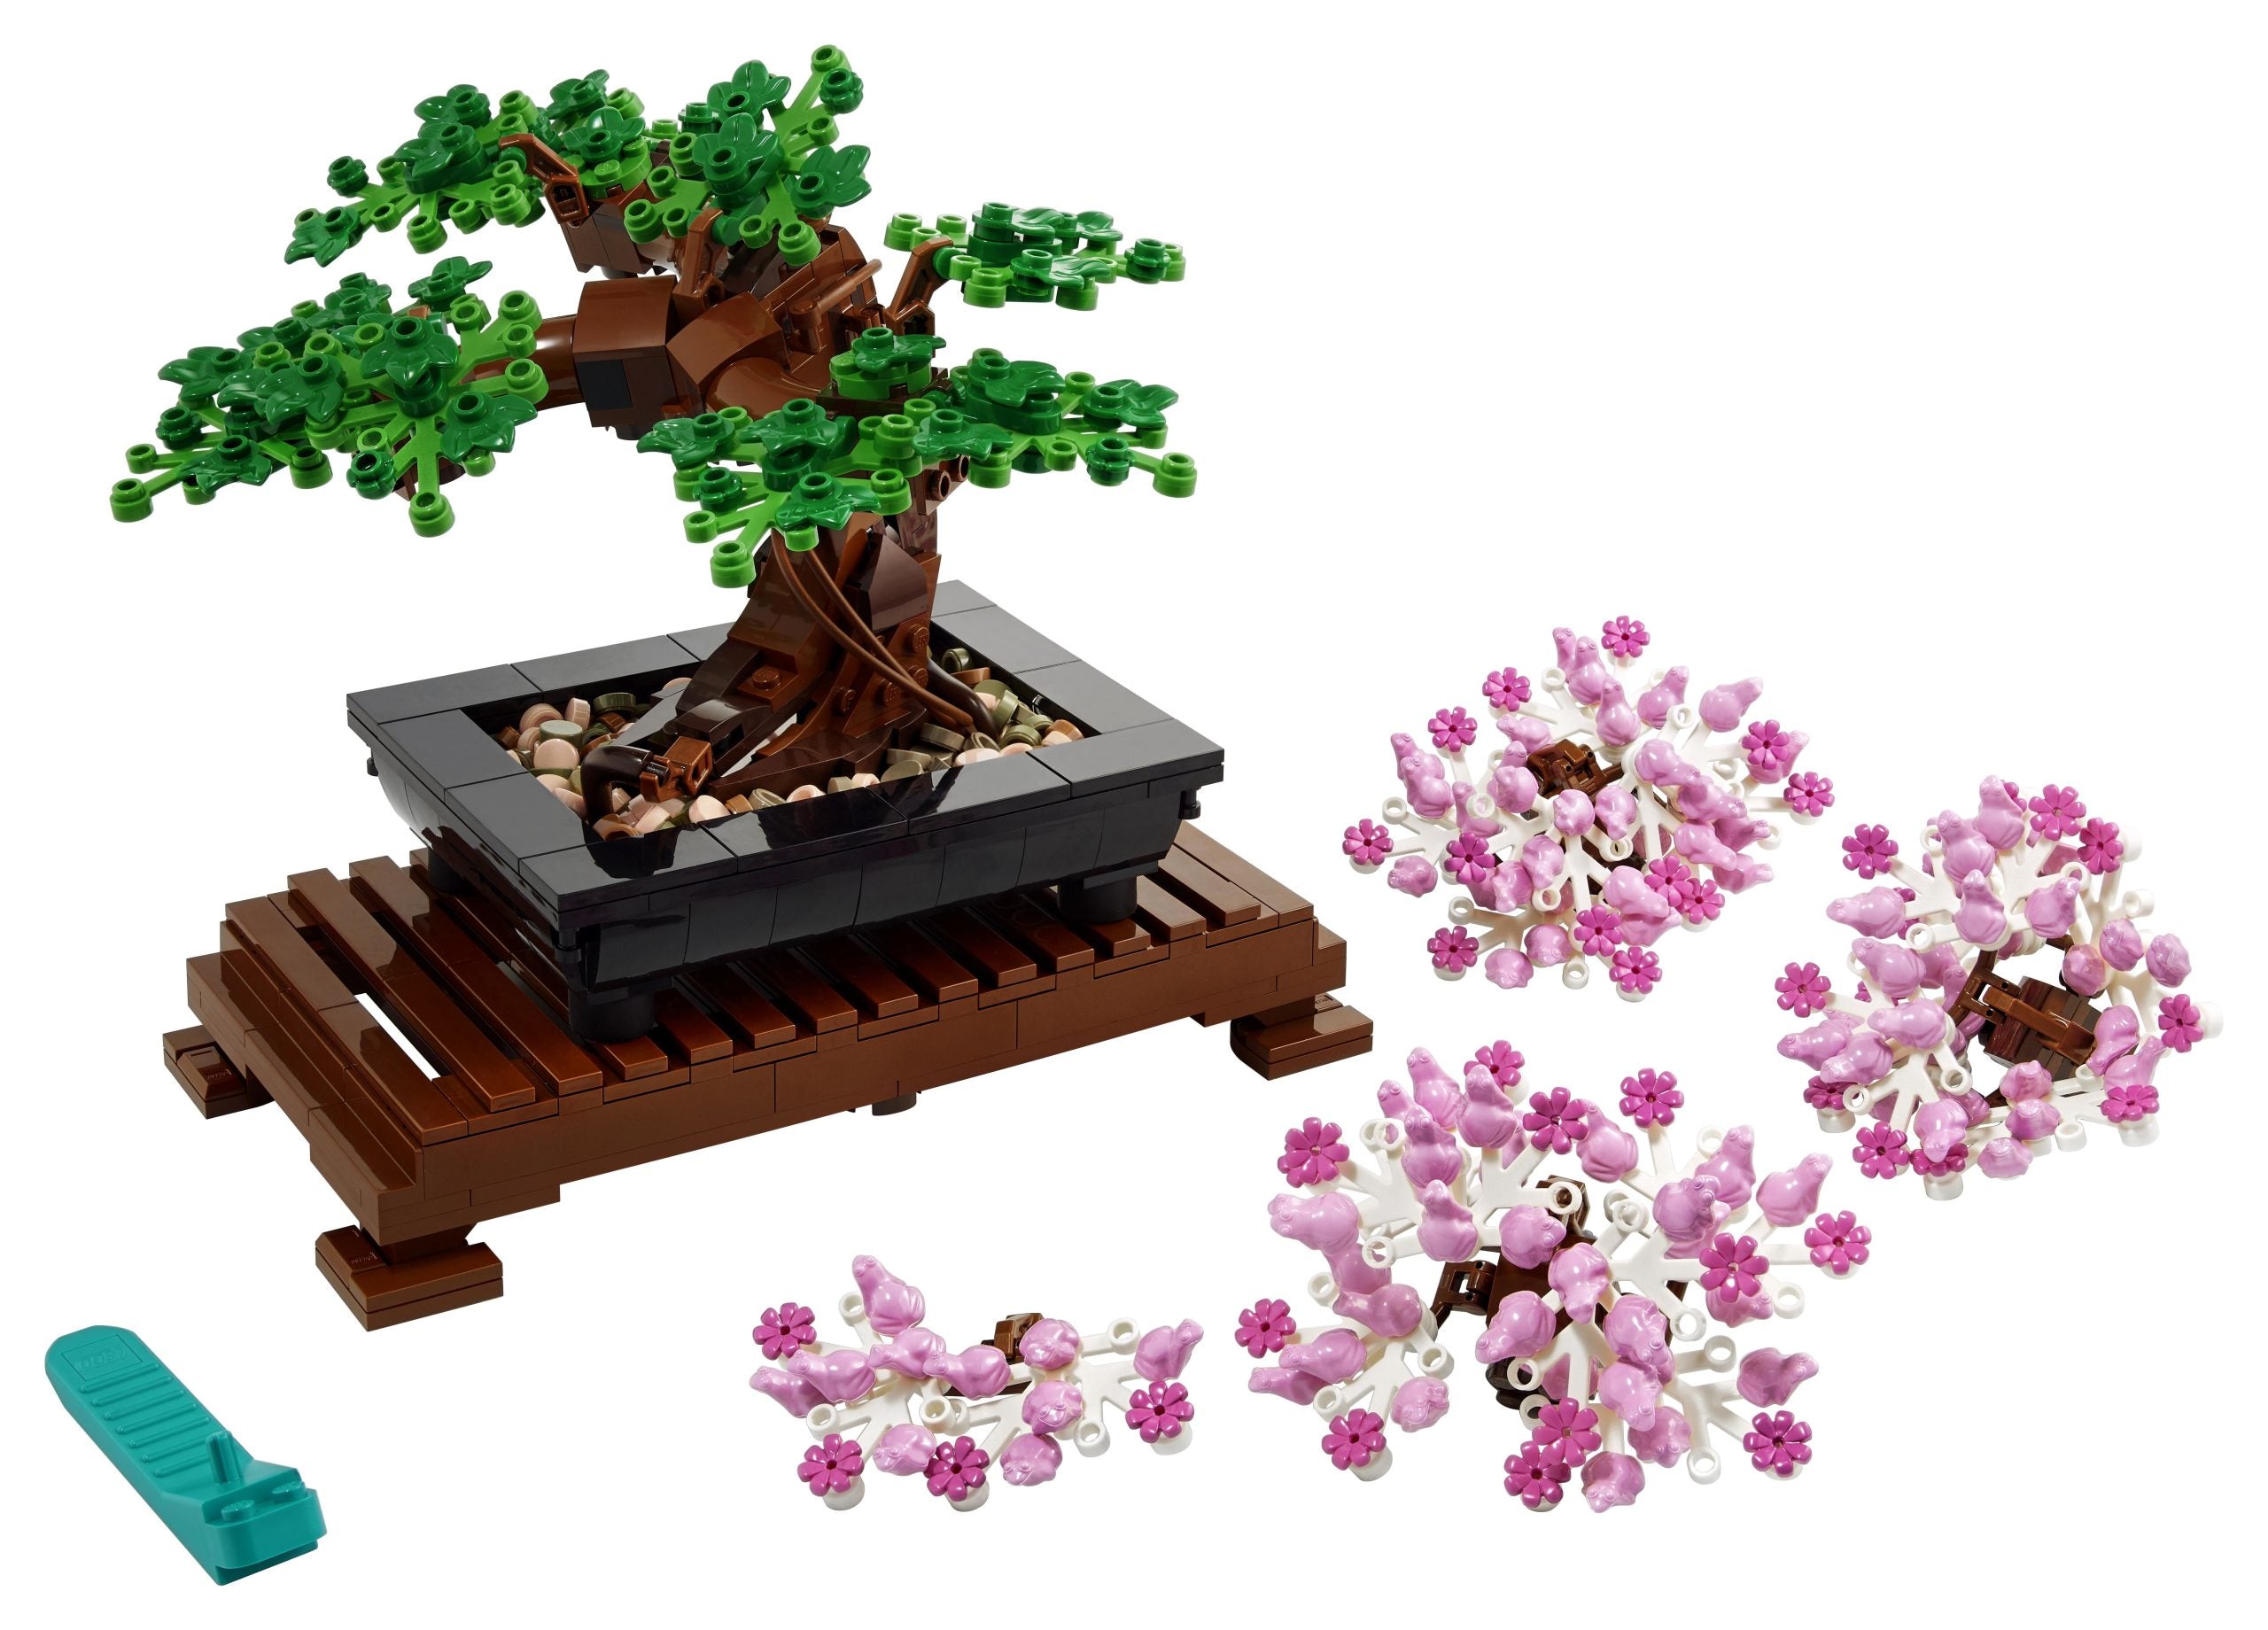 10281 LEGO® Ideas - BOTANICAL COLLECTION - Bonsai